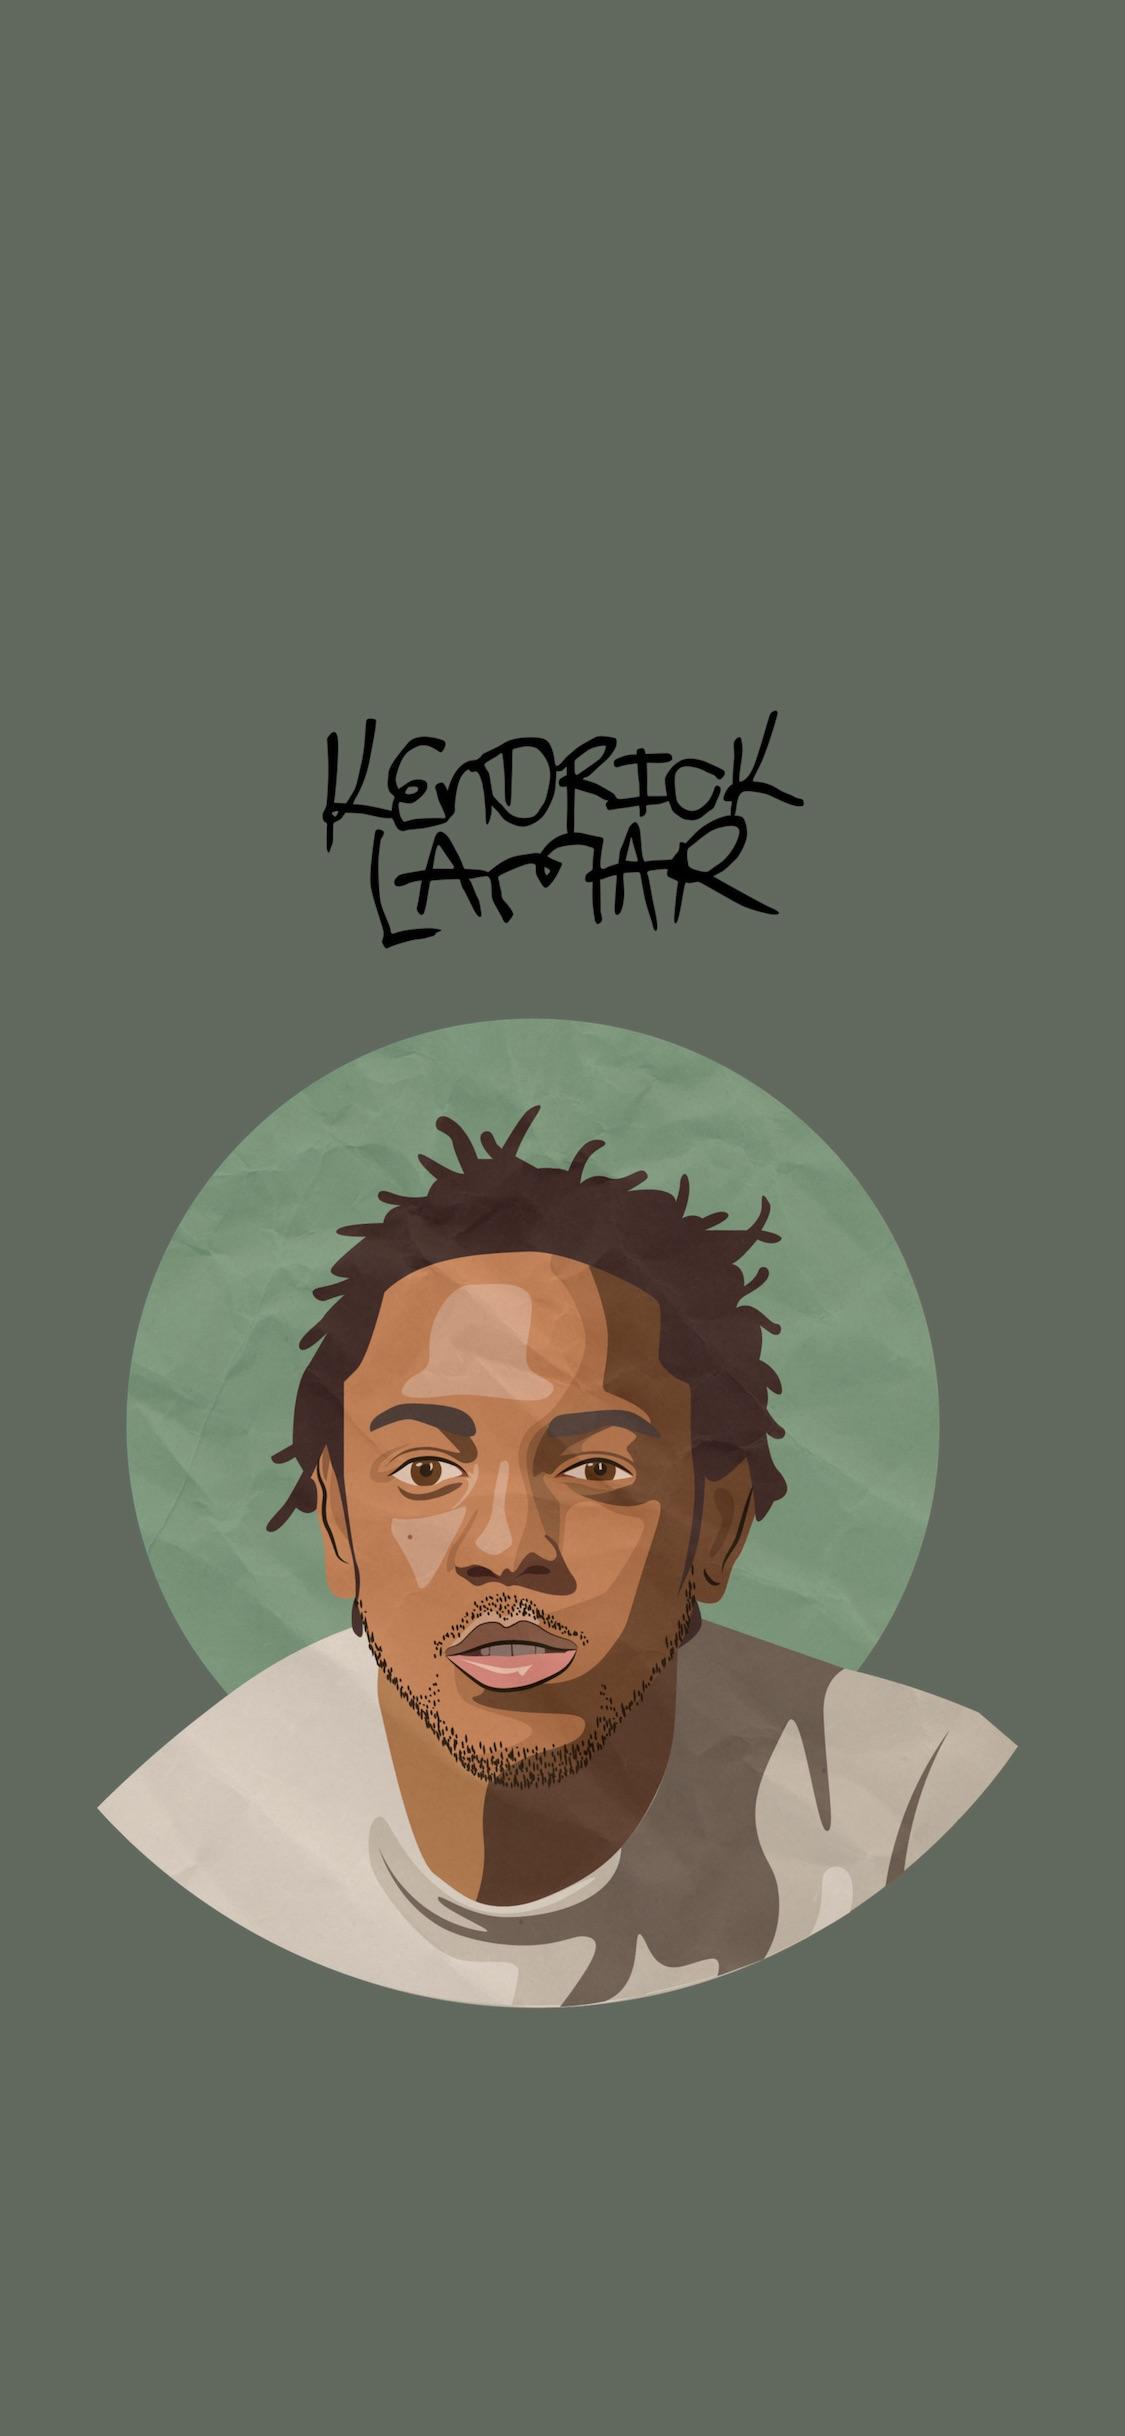 Kendrick Lamar iPhone X Wallpaper Hiphopwallpaper